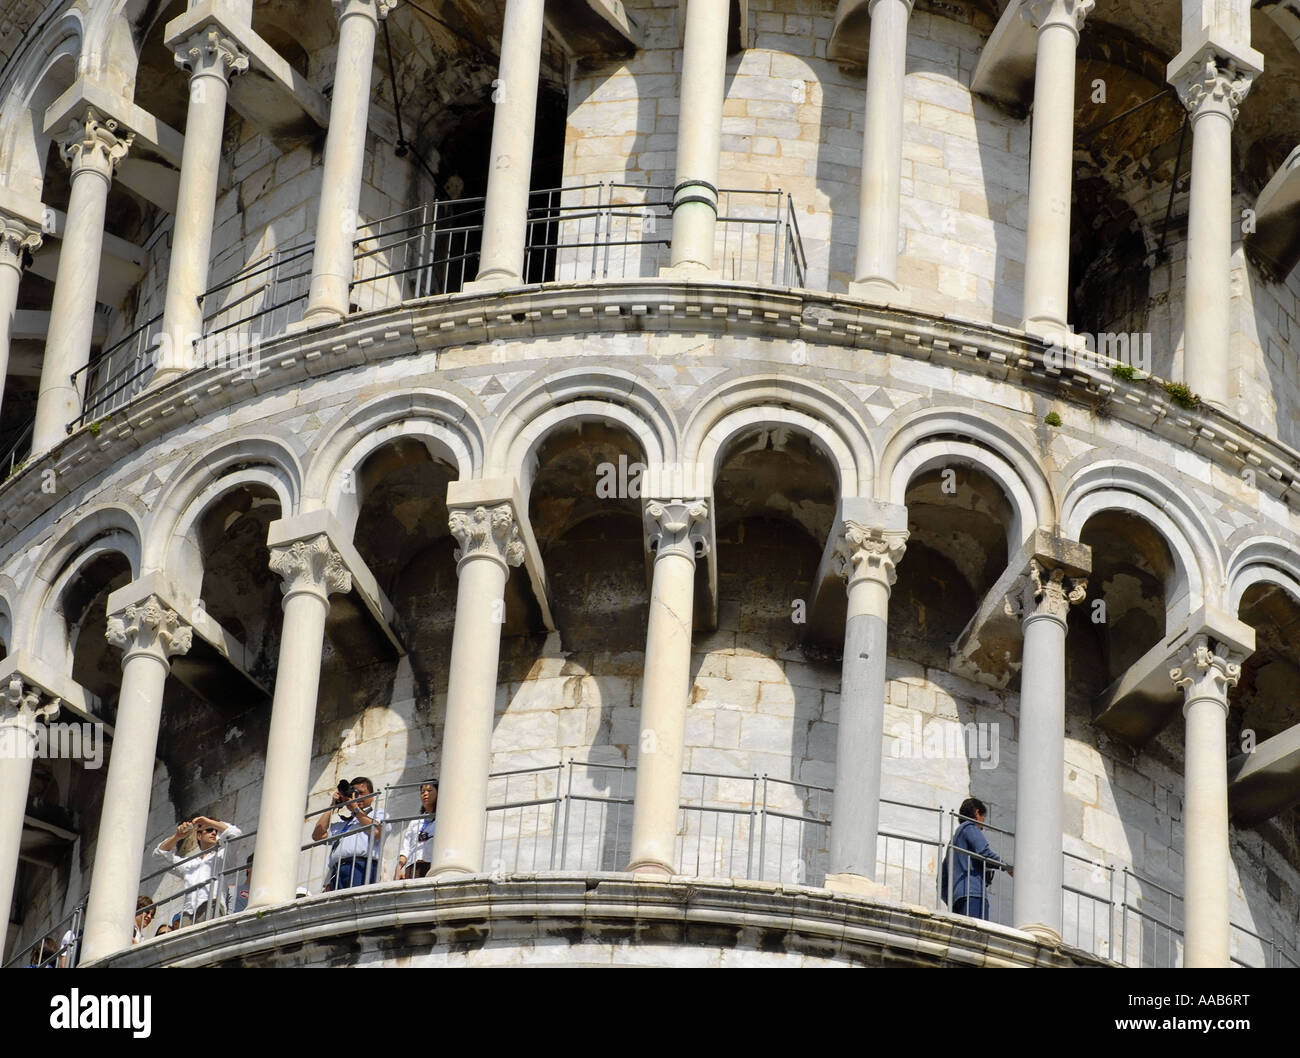 Détail de l'architecture de la Tour de Pise. L'Italie. Avril 2007. Banque D'Images